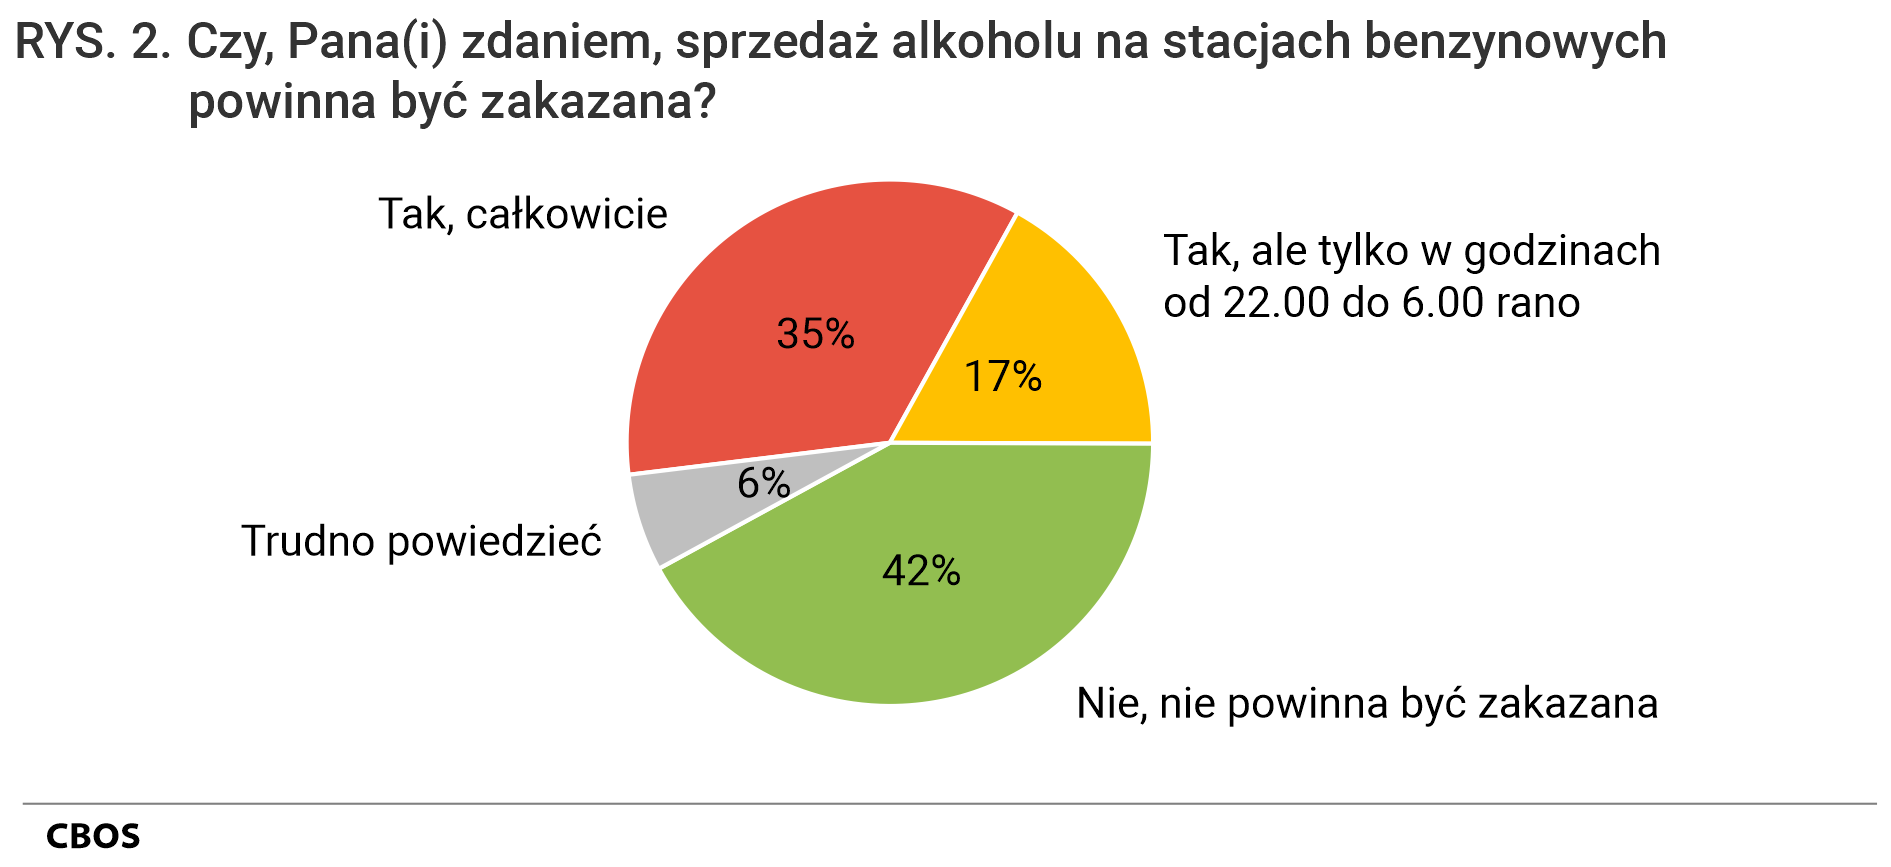 Rysunek 2. Czy, Pana(i) zdaniem, sprzedaż alkoholu na stacjach benzynowych powinna być zakazana? Tak, całkowicie 35%. Tak, ale tylko w godzinach od 22.00 do 6.00 rano 17%. Nie, nie powinna być zakazana 42%. Trudno powiedzieć 6%.